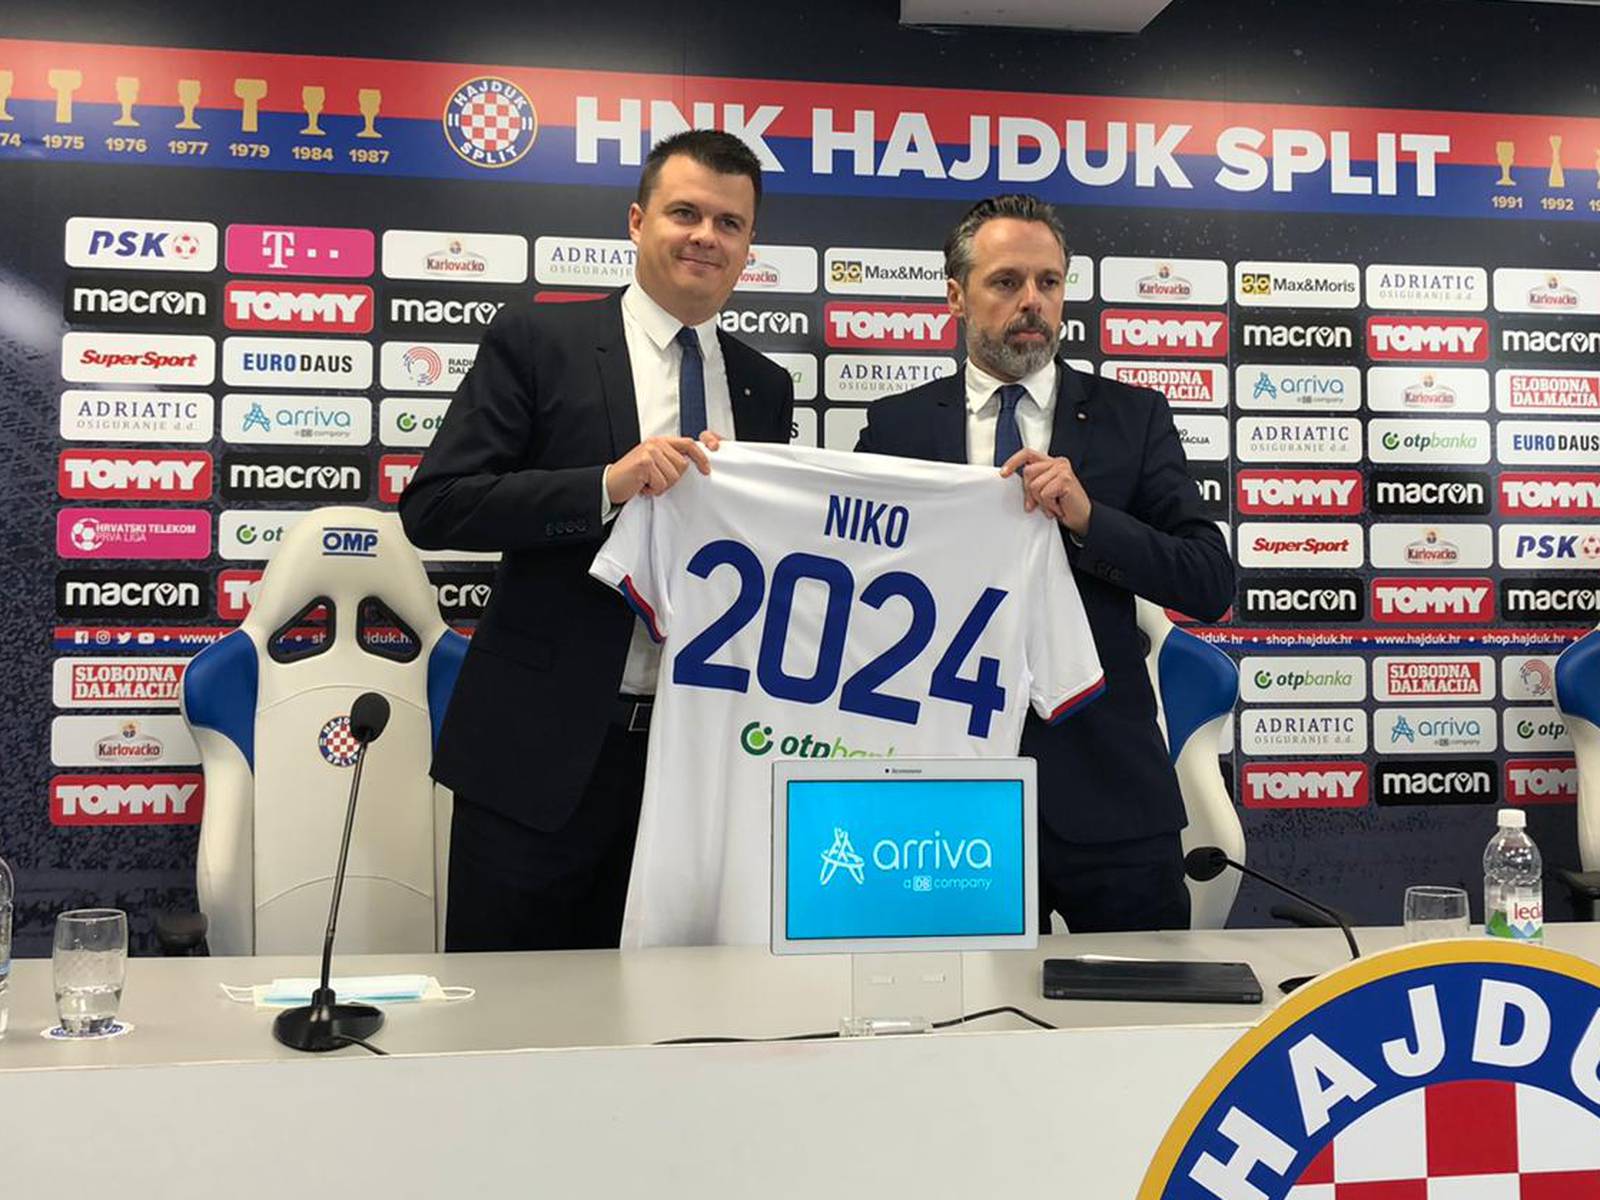 Dok god Hajduk luta, mladi će igrači uspijevati samo slučajno